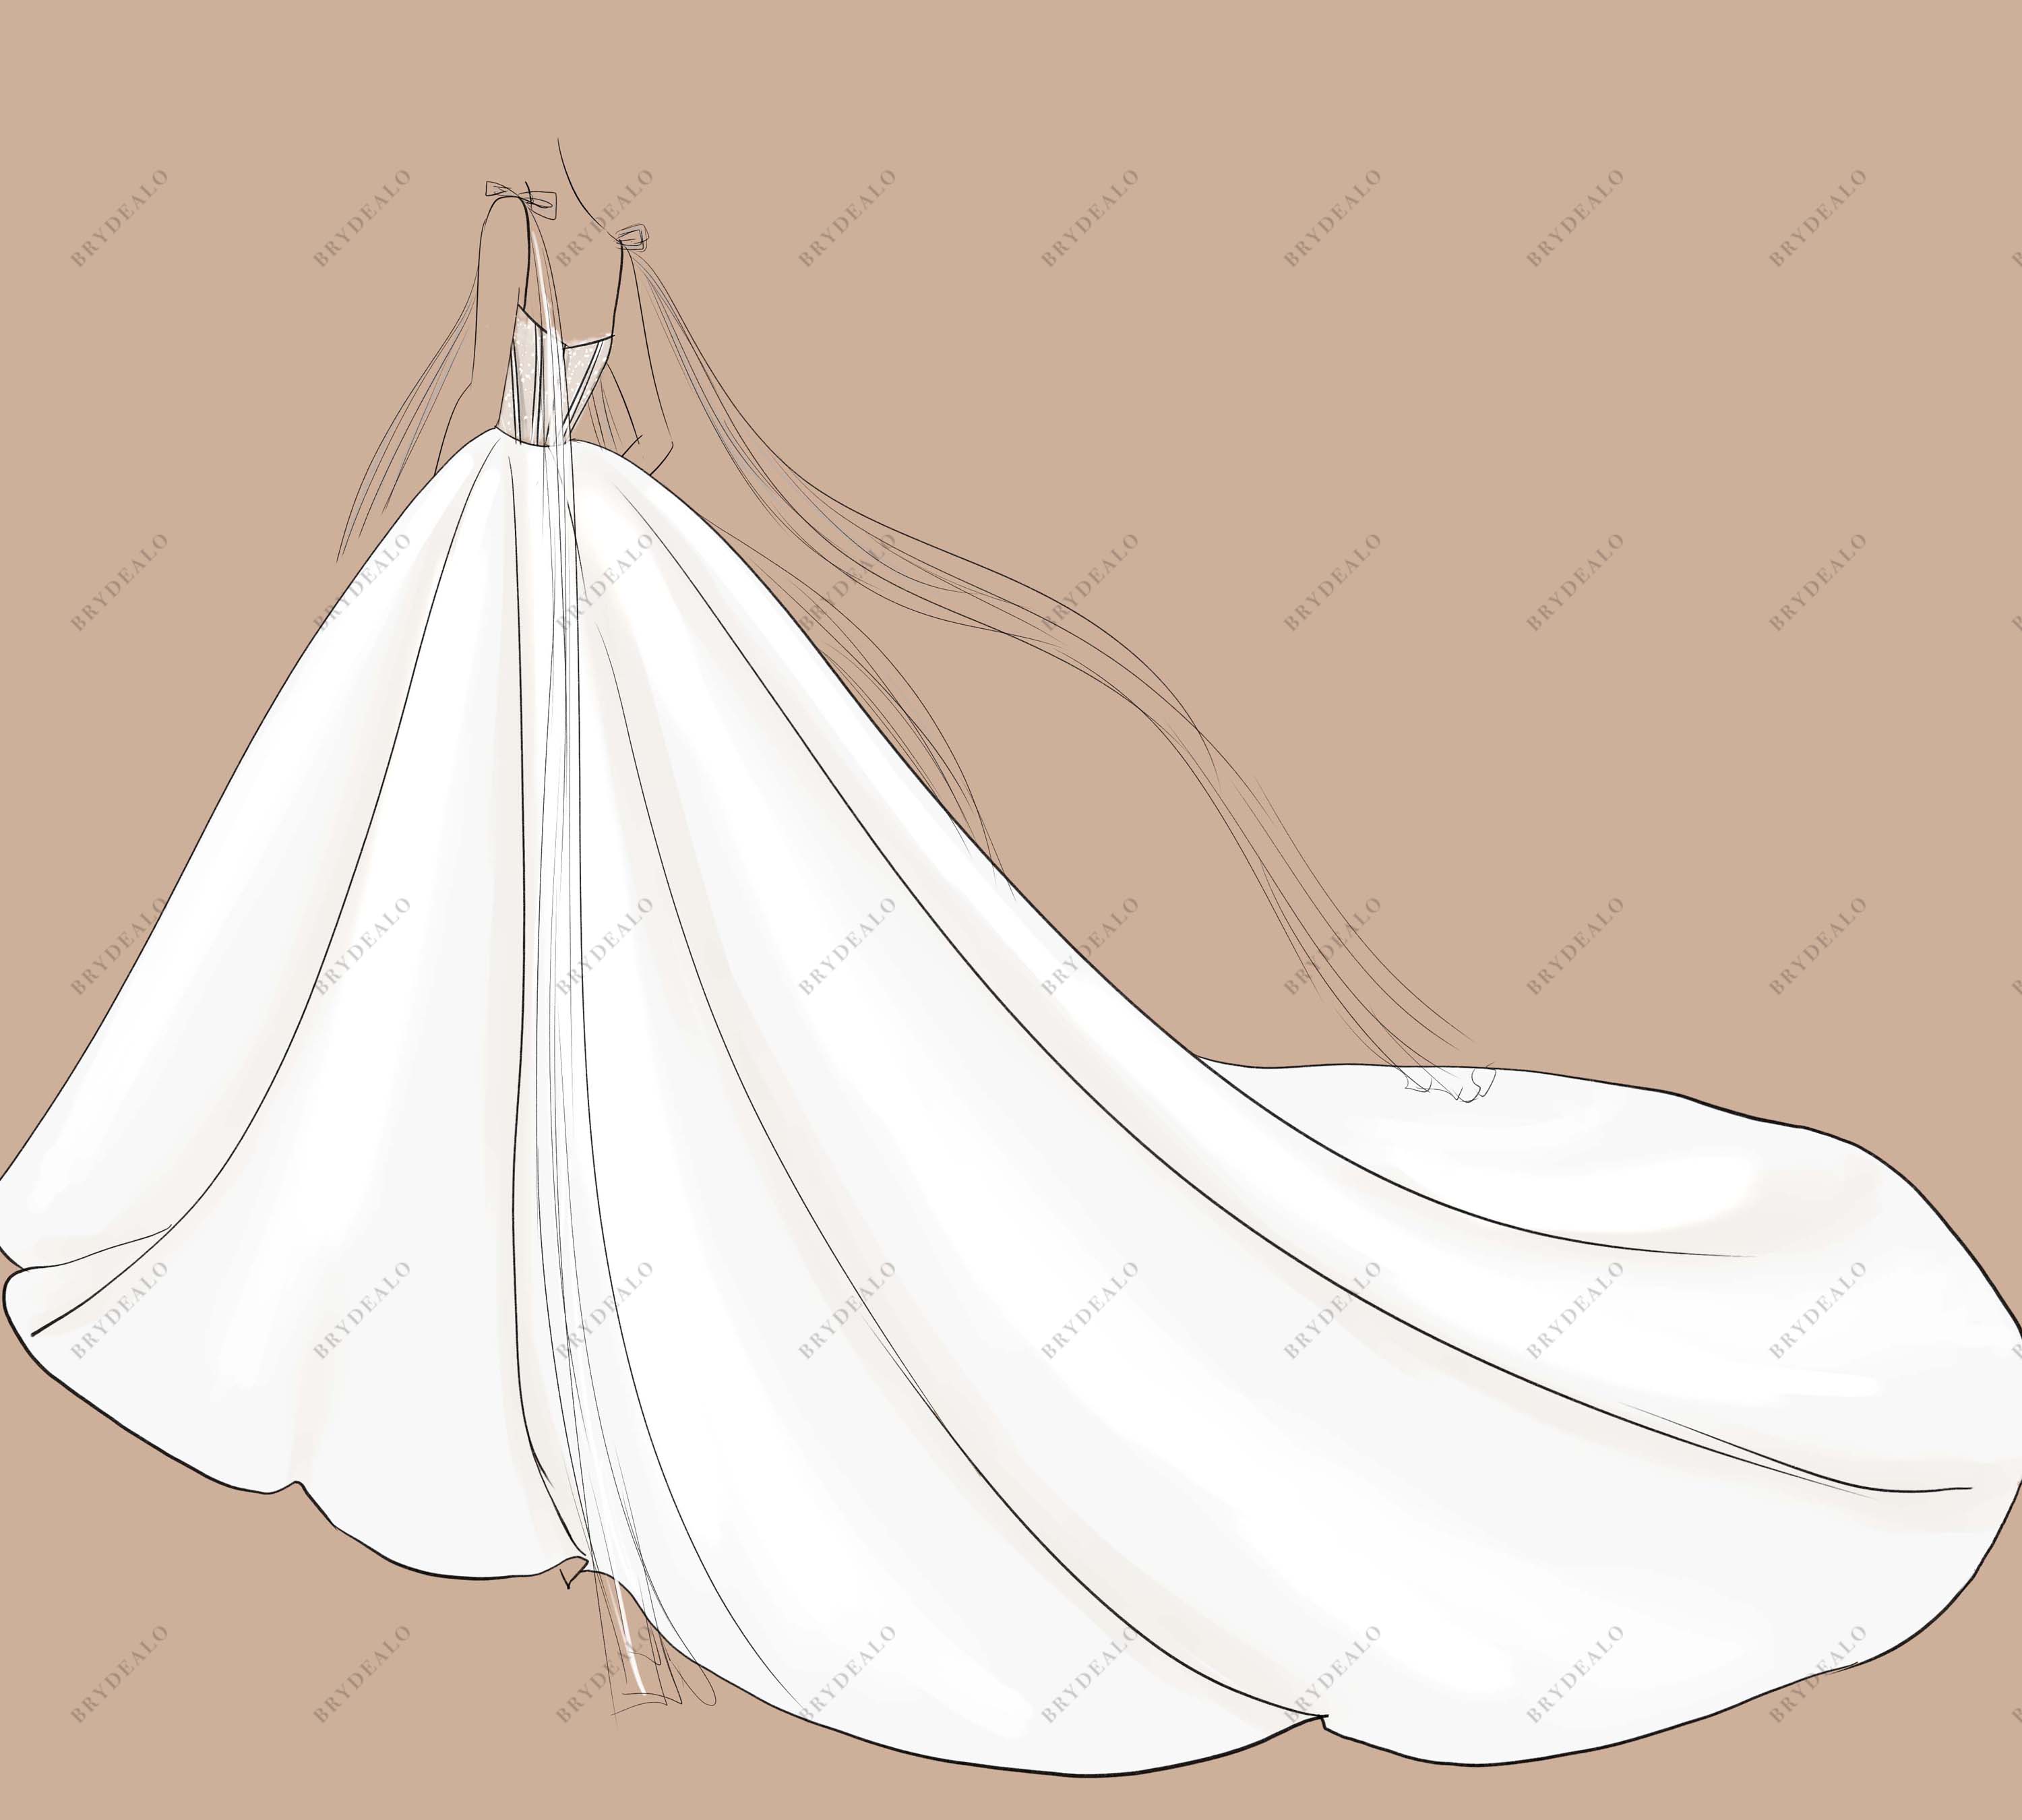 corset bow sashes straps satin ball gown sketch